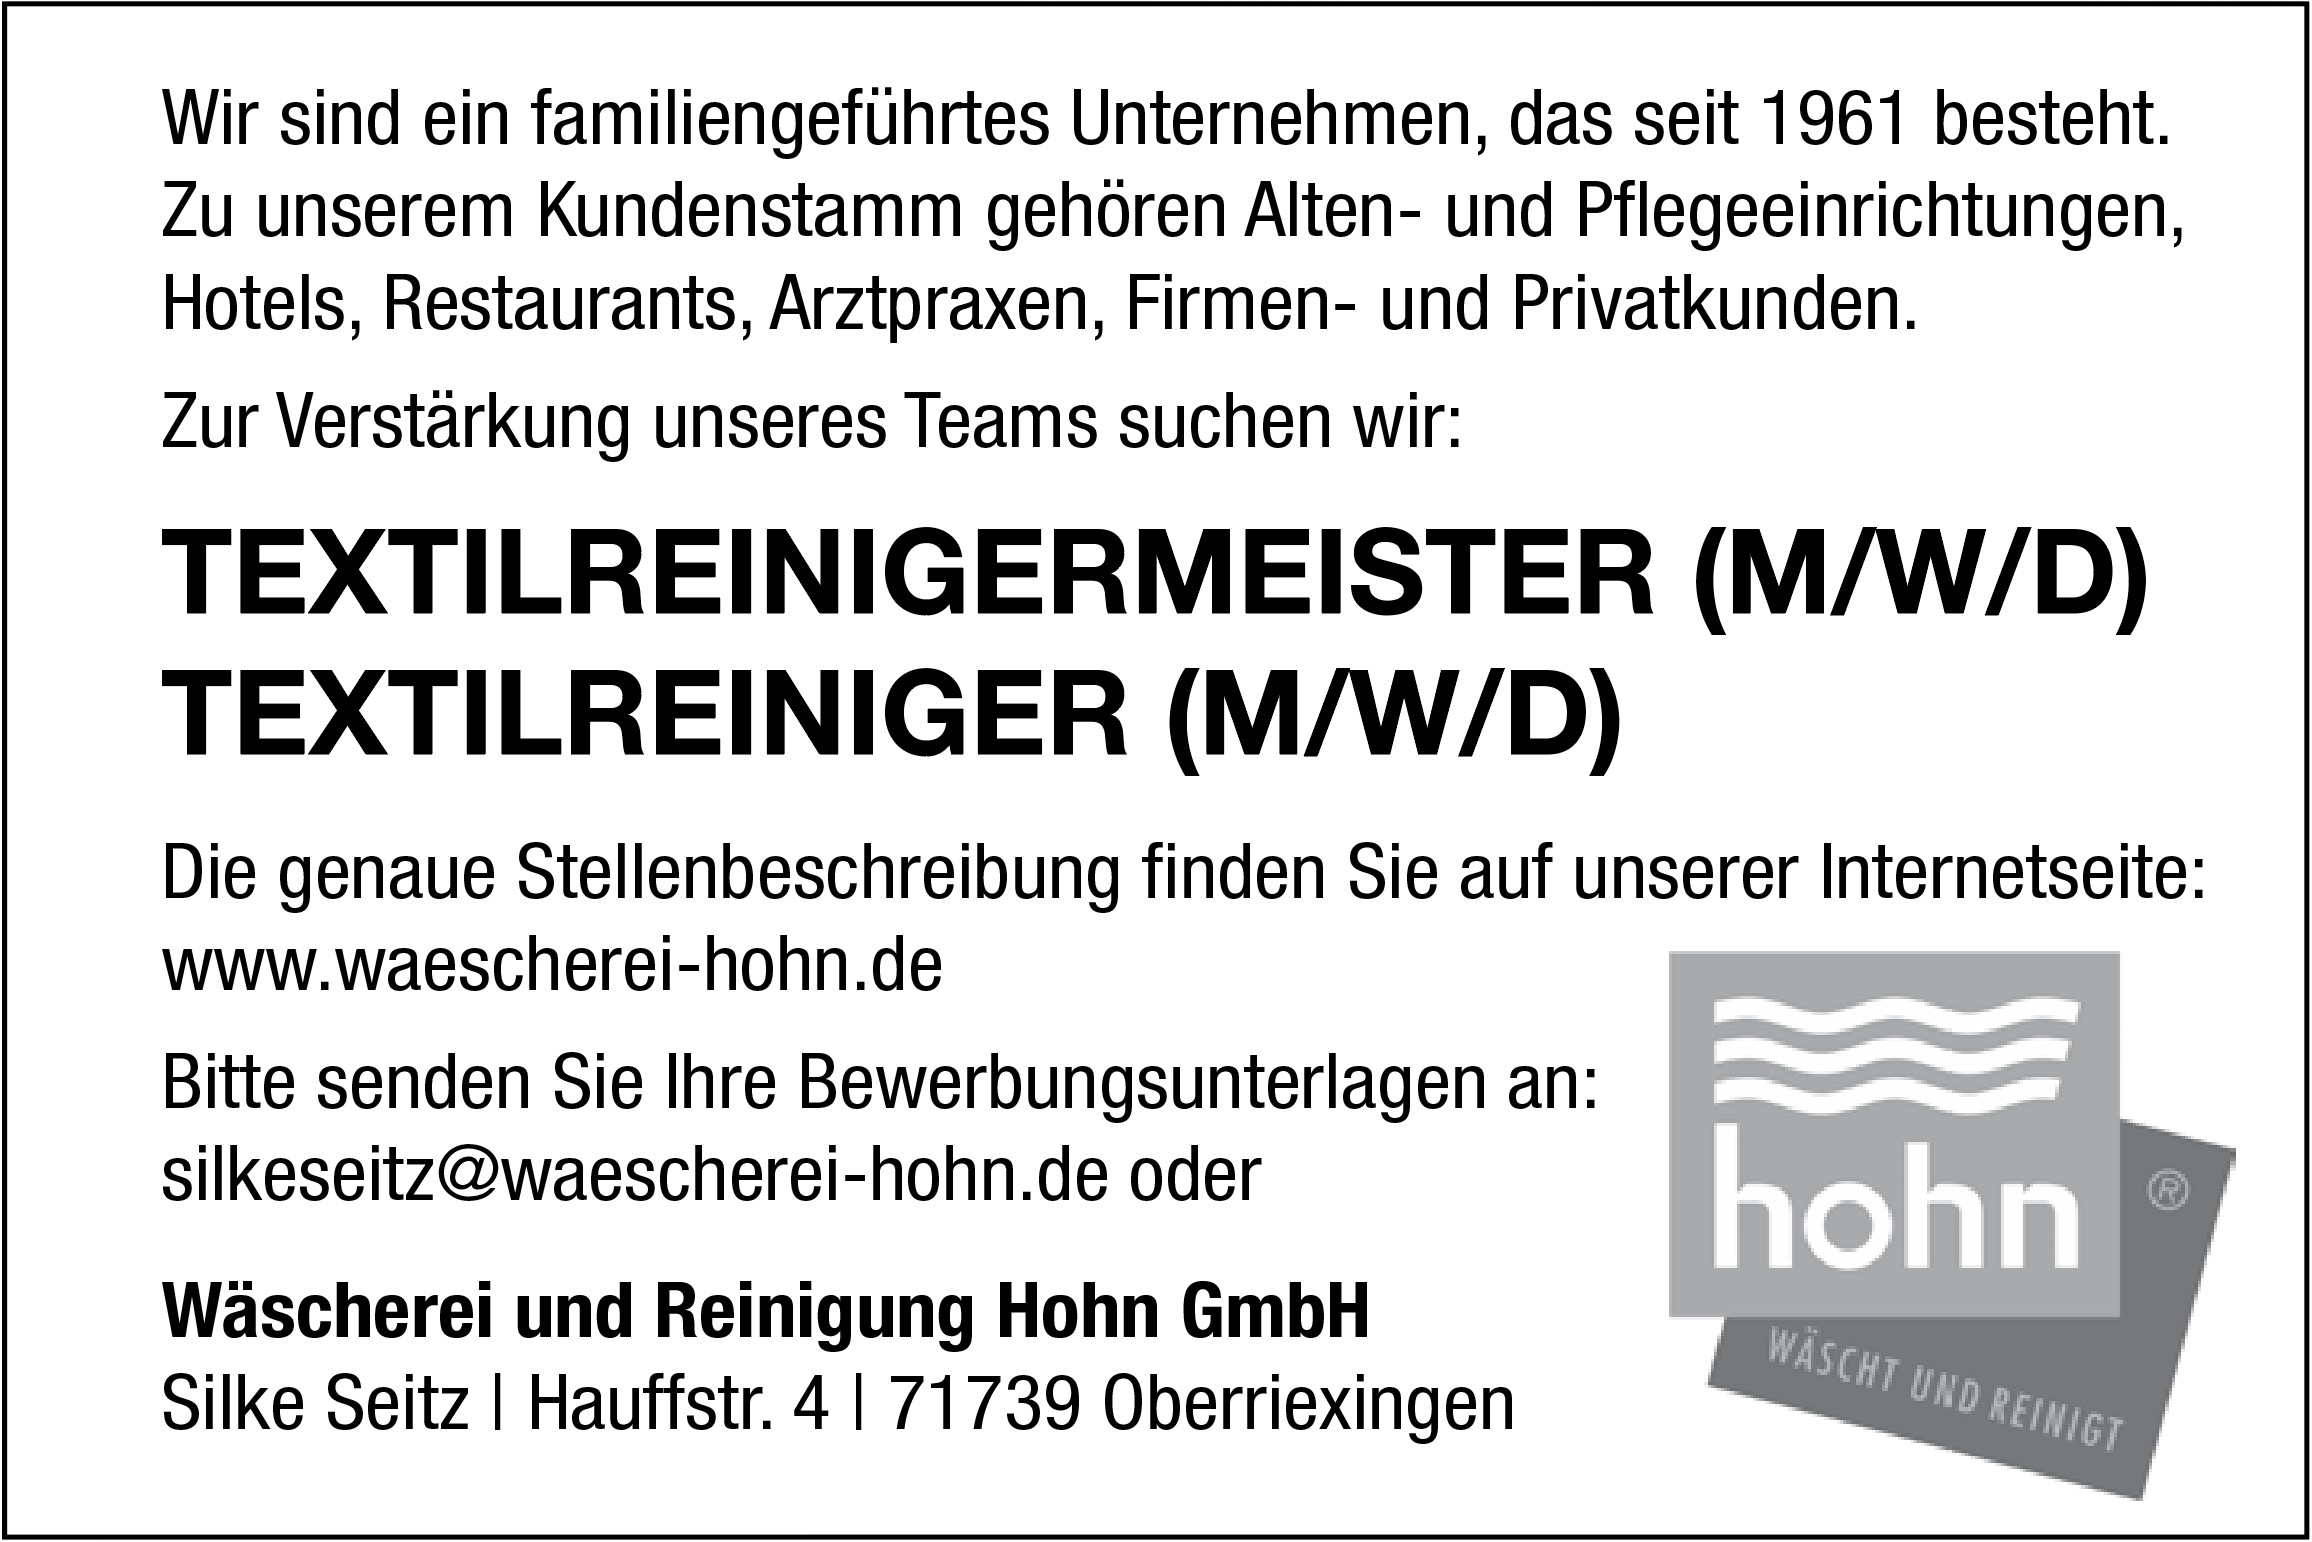 Textilreinigermeister (m/w/d)
Textilreiniger (m/w/d)